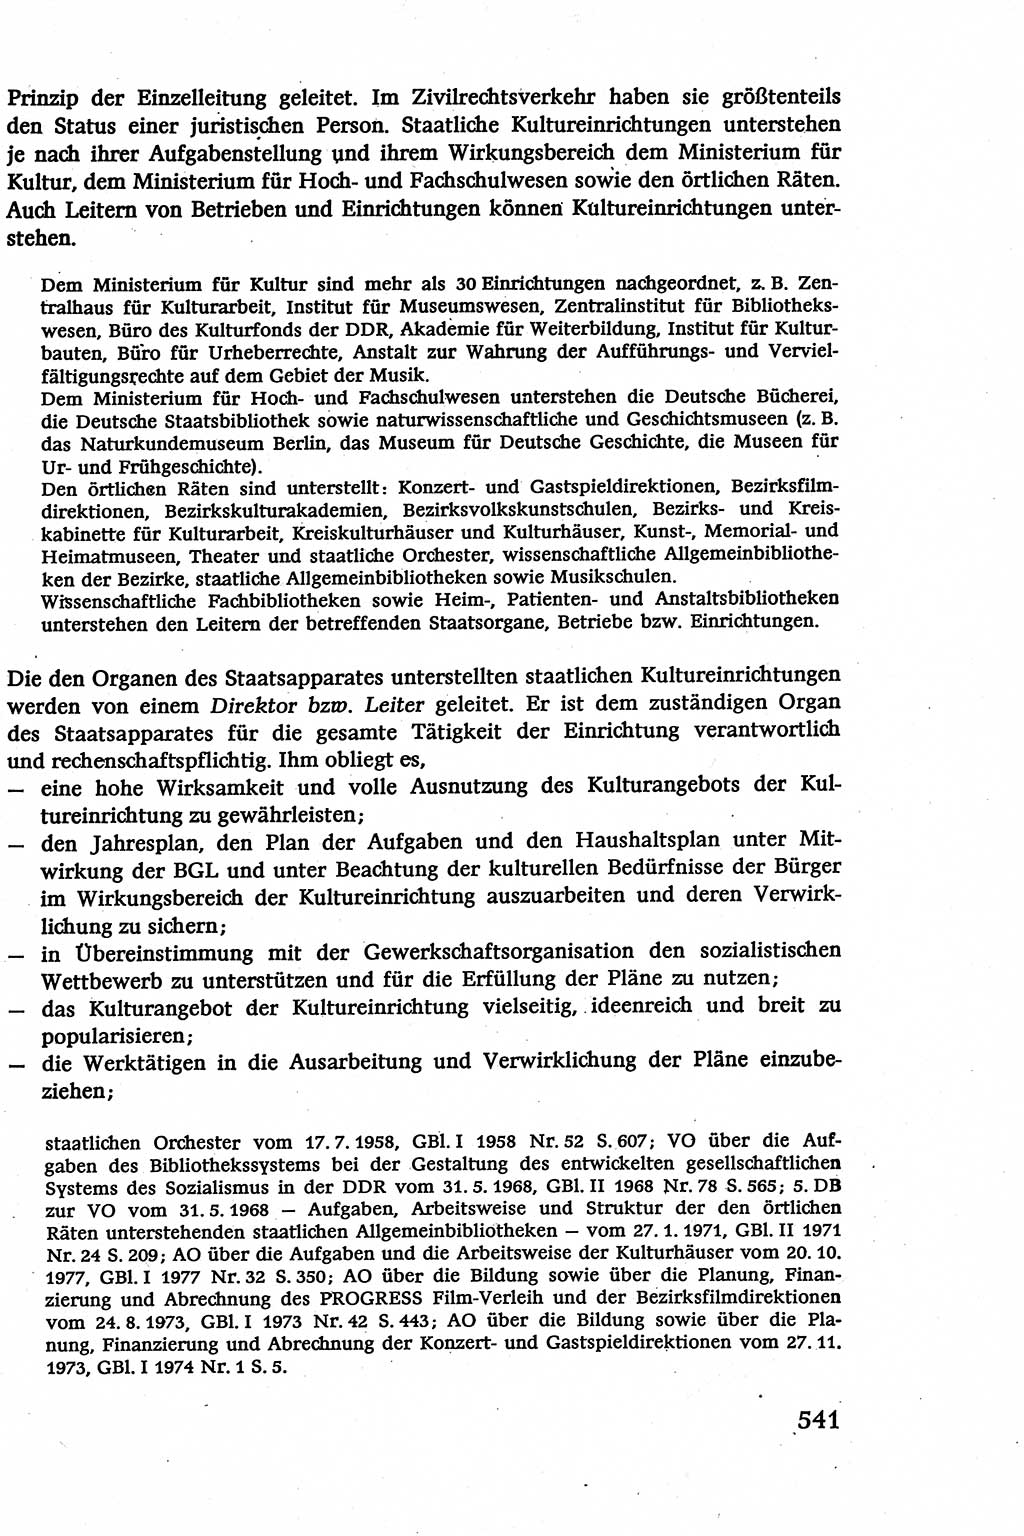 Verwaltungsrecht [Deutsche Demokratische Republik (DDR)], Lehrbuch 1979, Seite 541 (Verw.-R. DDR Lb. 1979, S. 541)